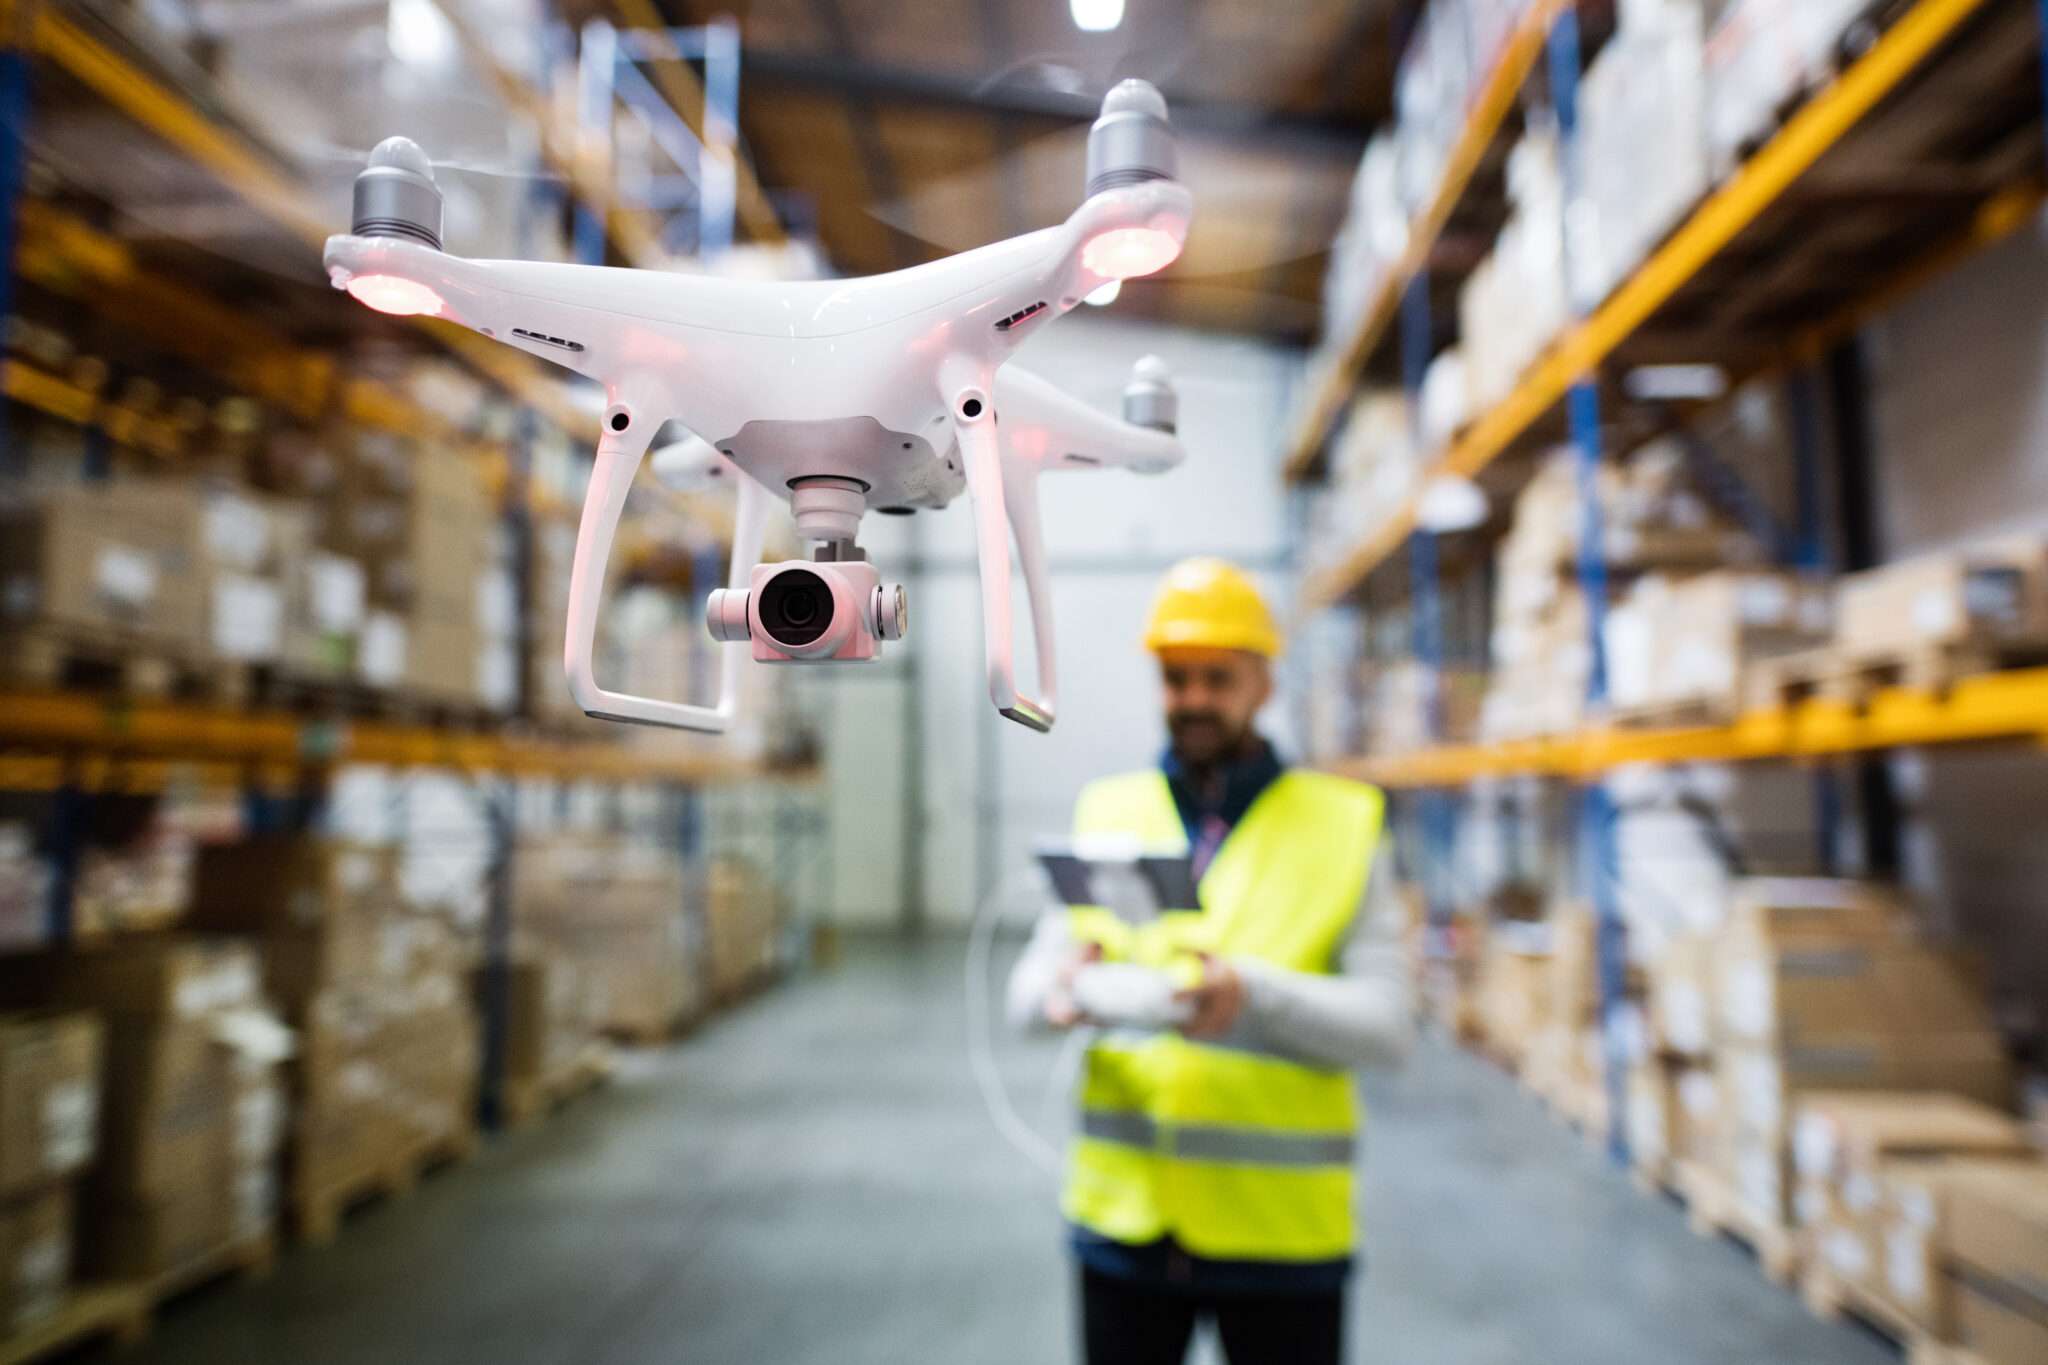 Der Lagerarbeiter nutzt die autonome Drohne für Inventuraufgaben.